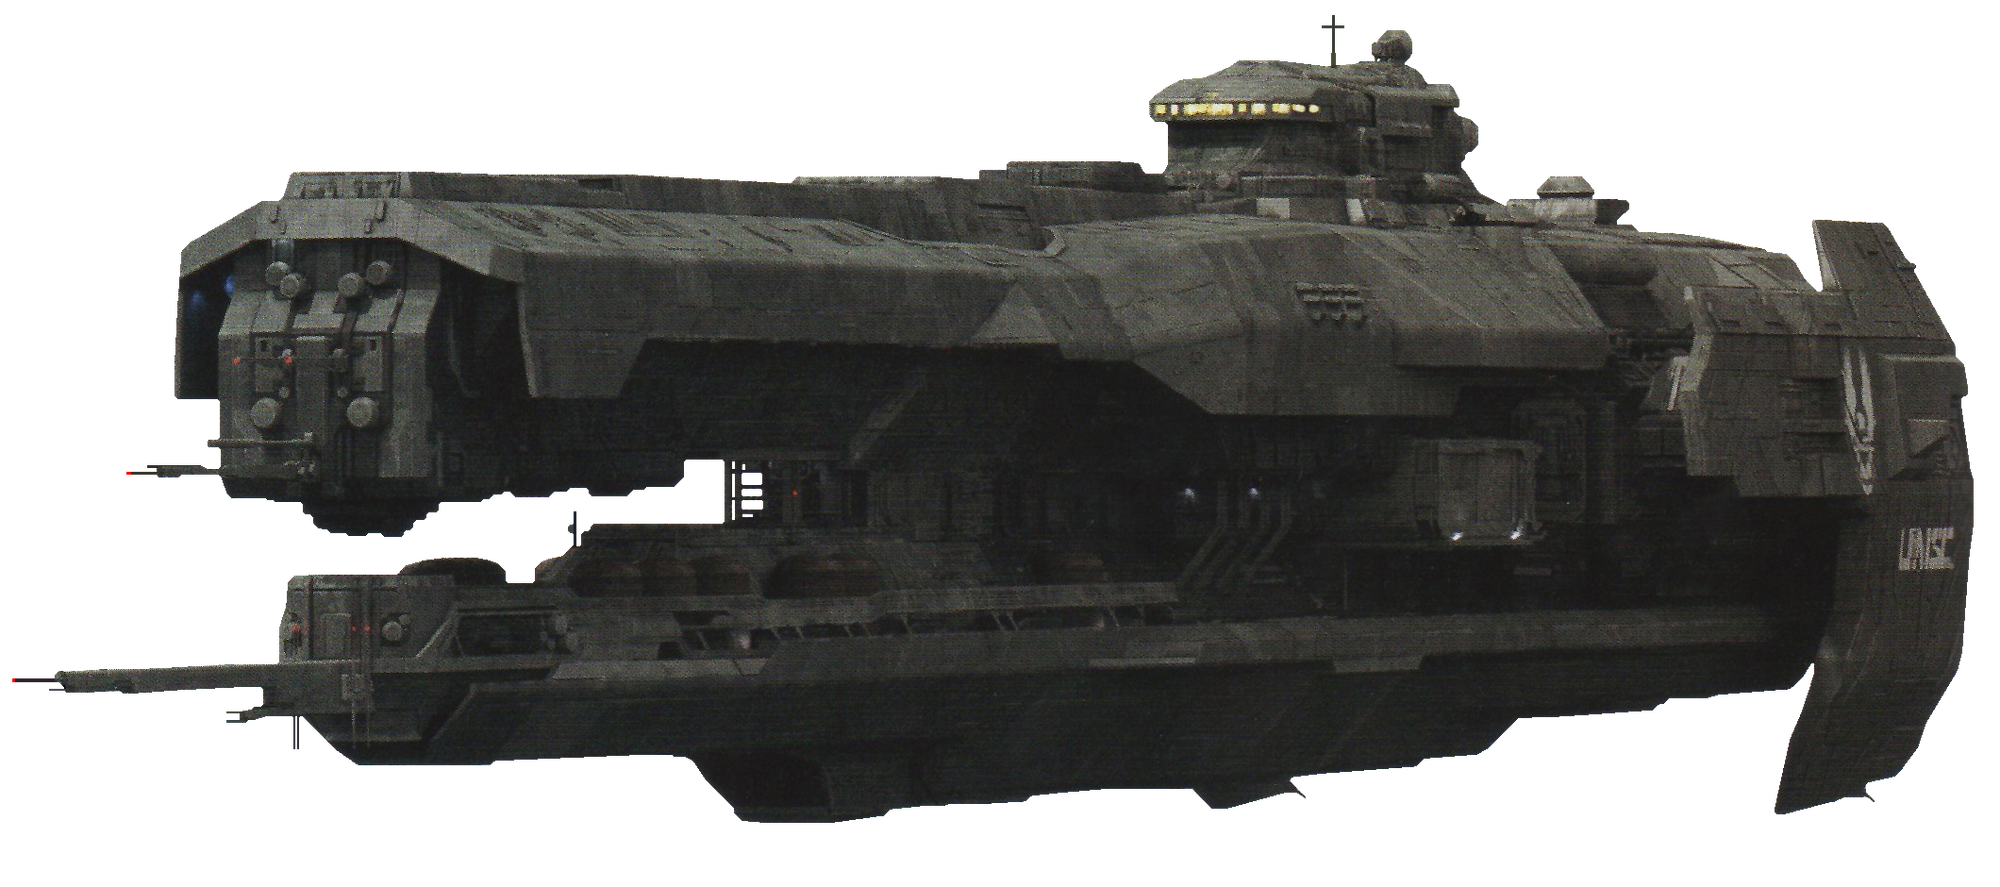 strident-class-heavy-frigate-halo-nation-fandom-powered-by-wikia